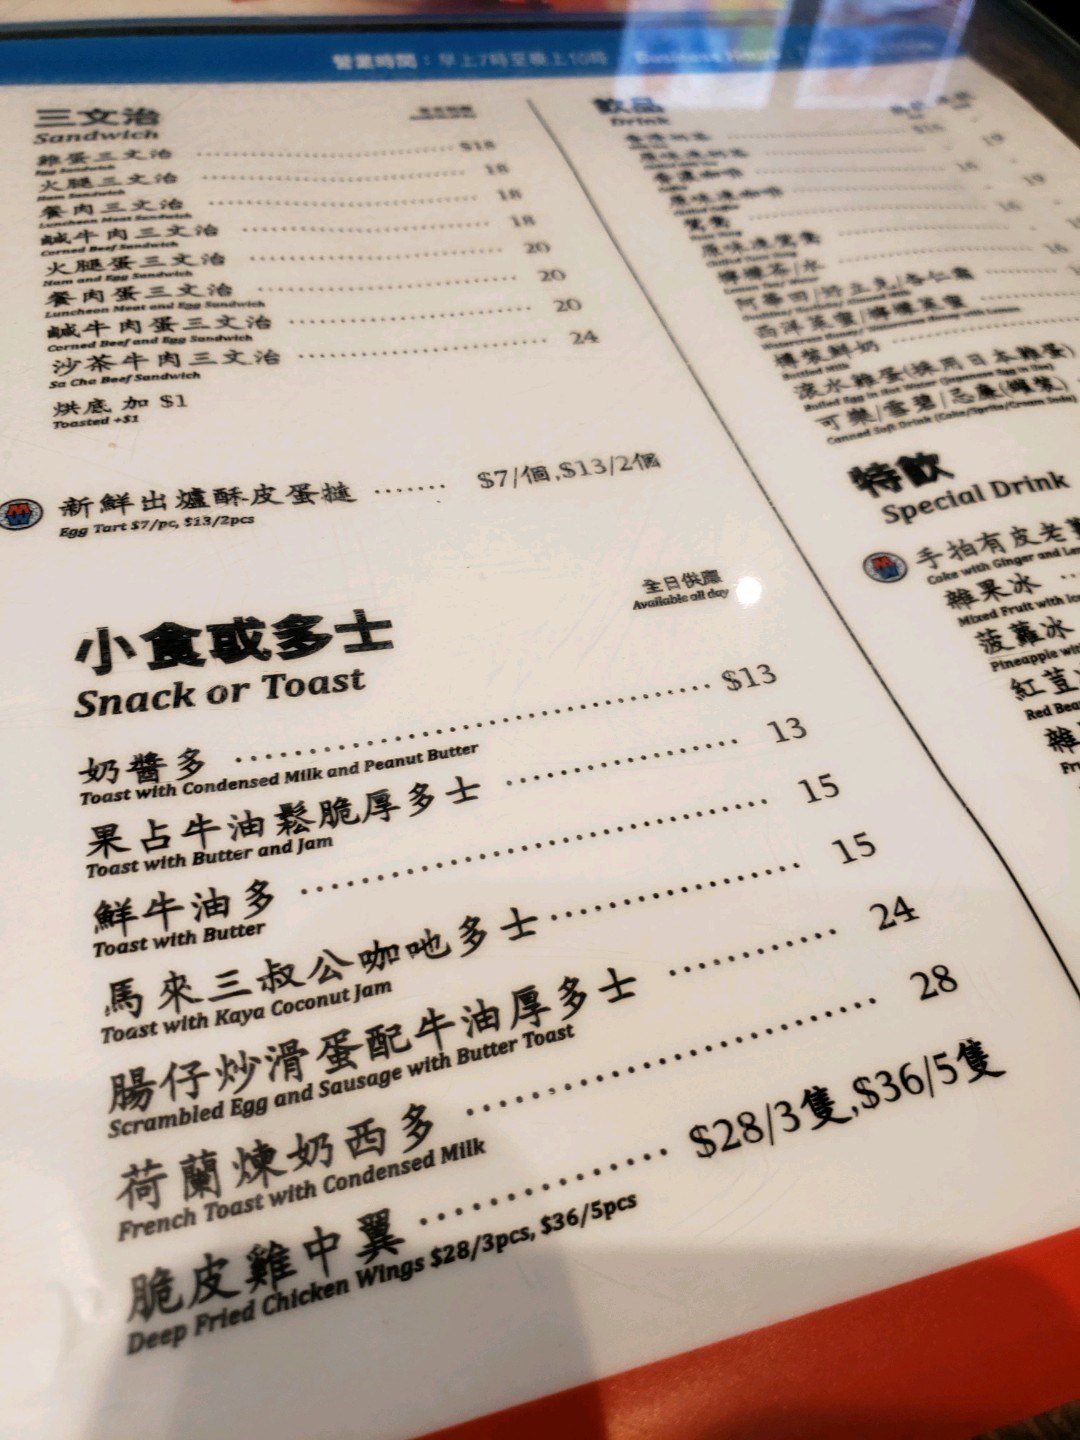 Men Wah Bing Tengs Menu Hong Kong Style Tea Restaurant In Mong Kok Moko Hong Kong Openrice 